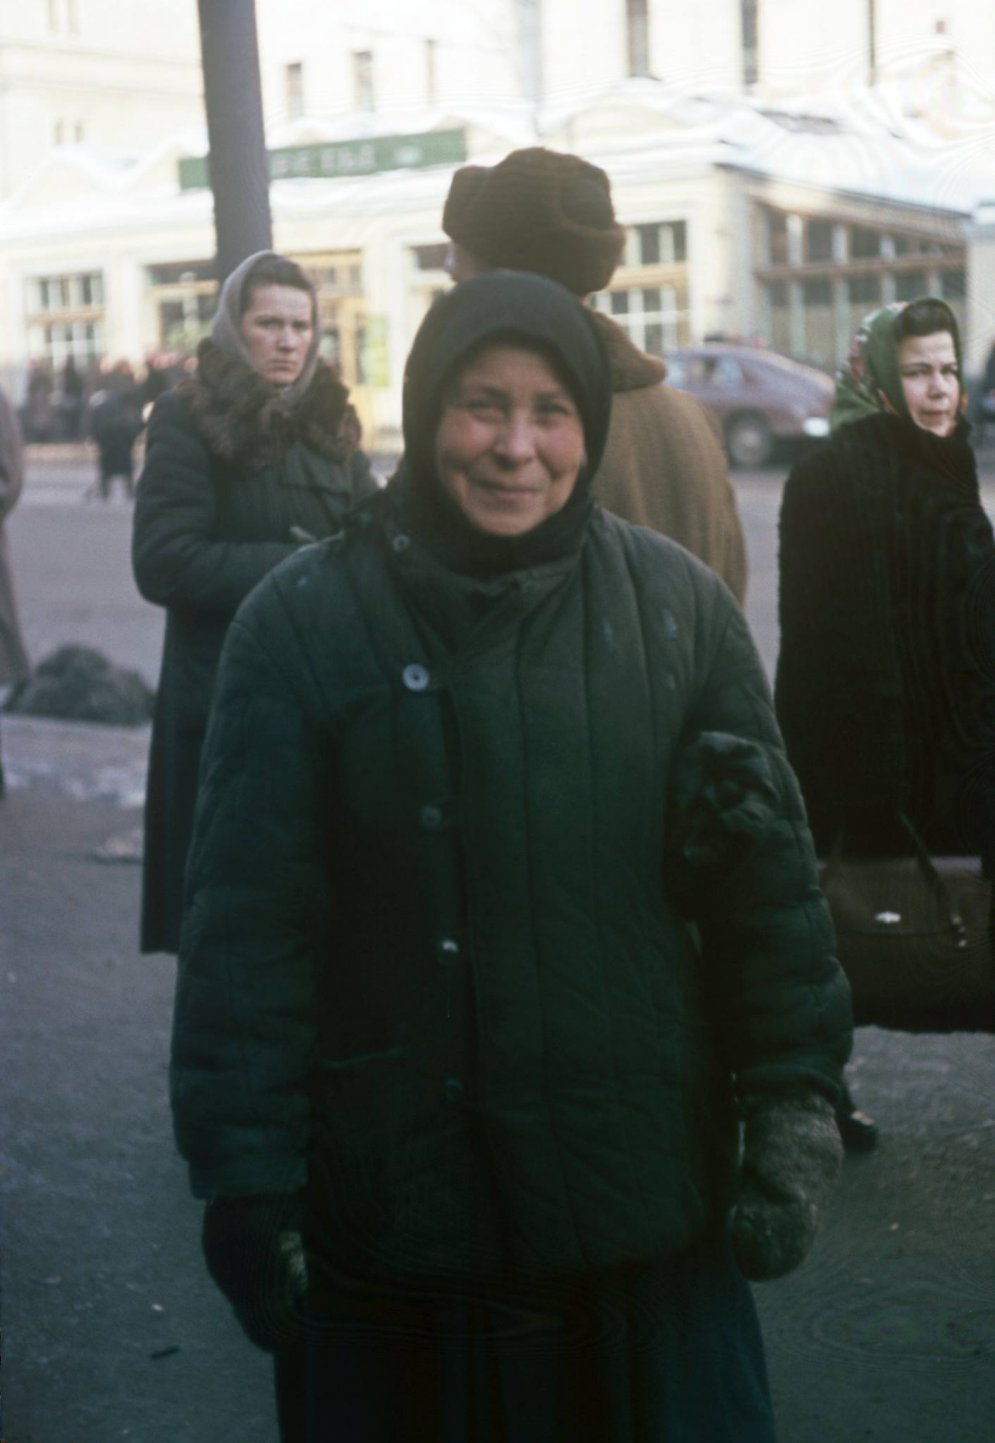 12 уникальных цветных фото улиц и людей в СССР, сделанных майором армии США в 1950-х